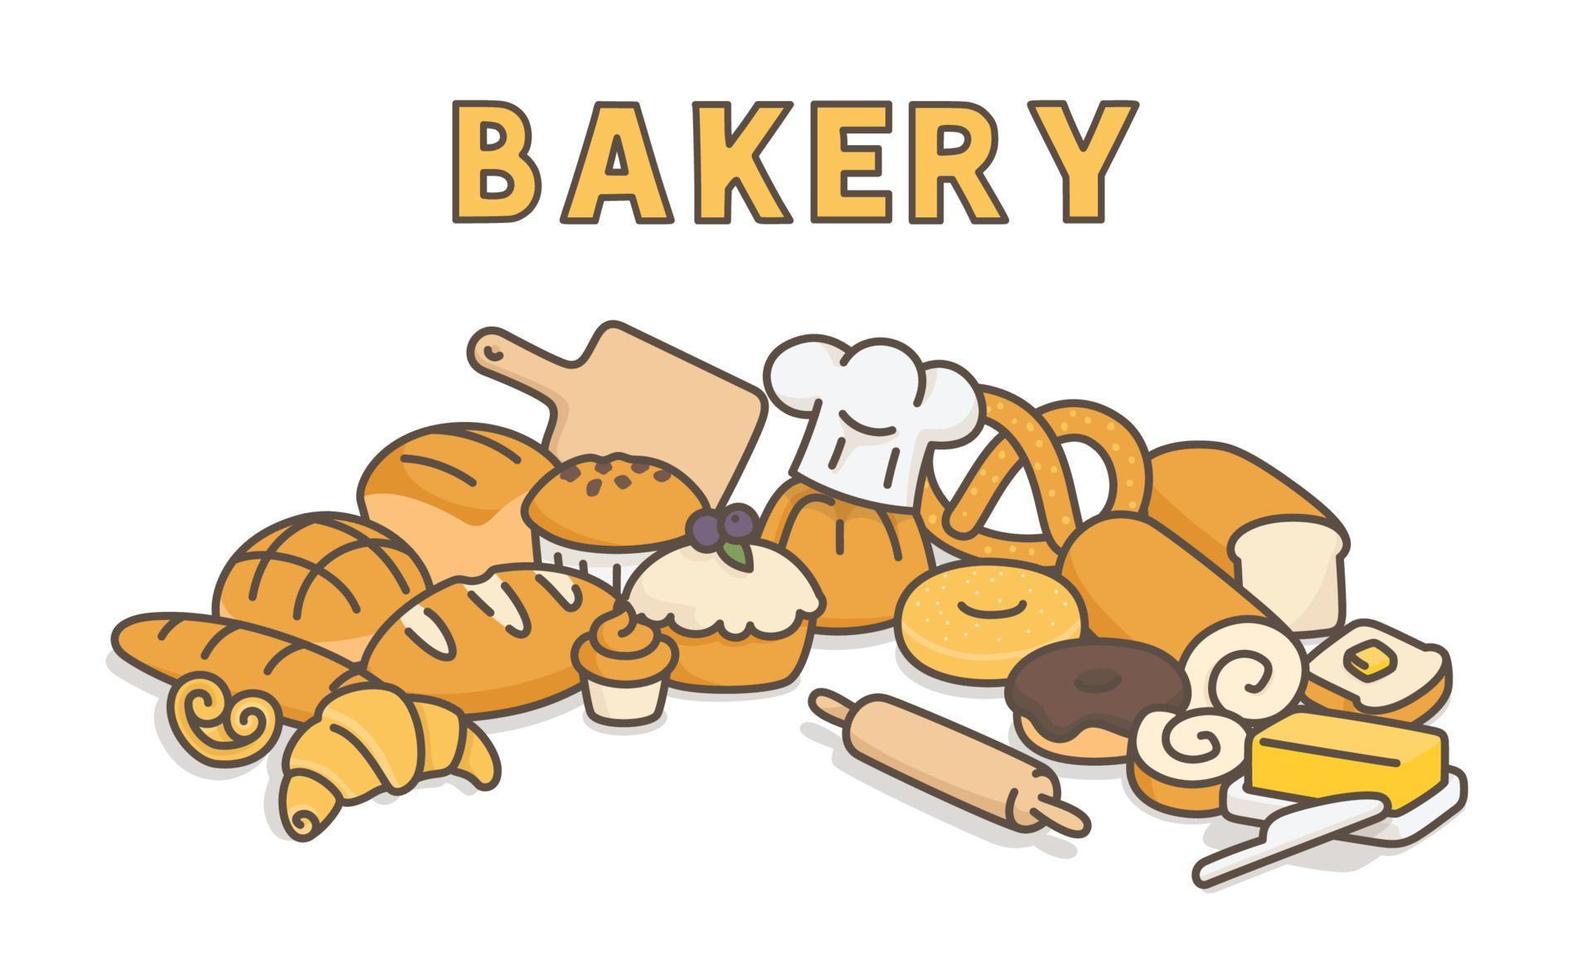 många typer av bröd mockup banner kawaii doodle platt tecknad vektorillustration vektor